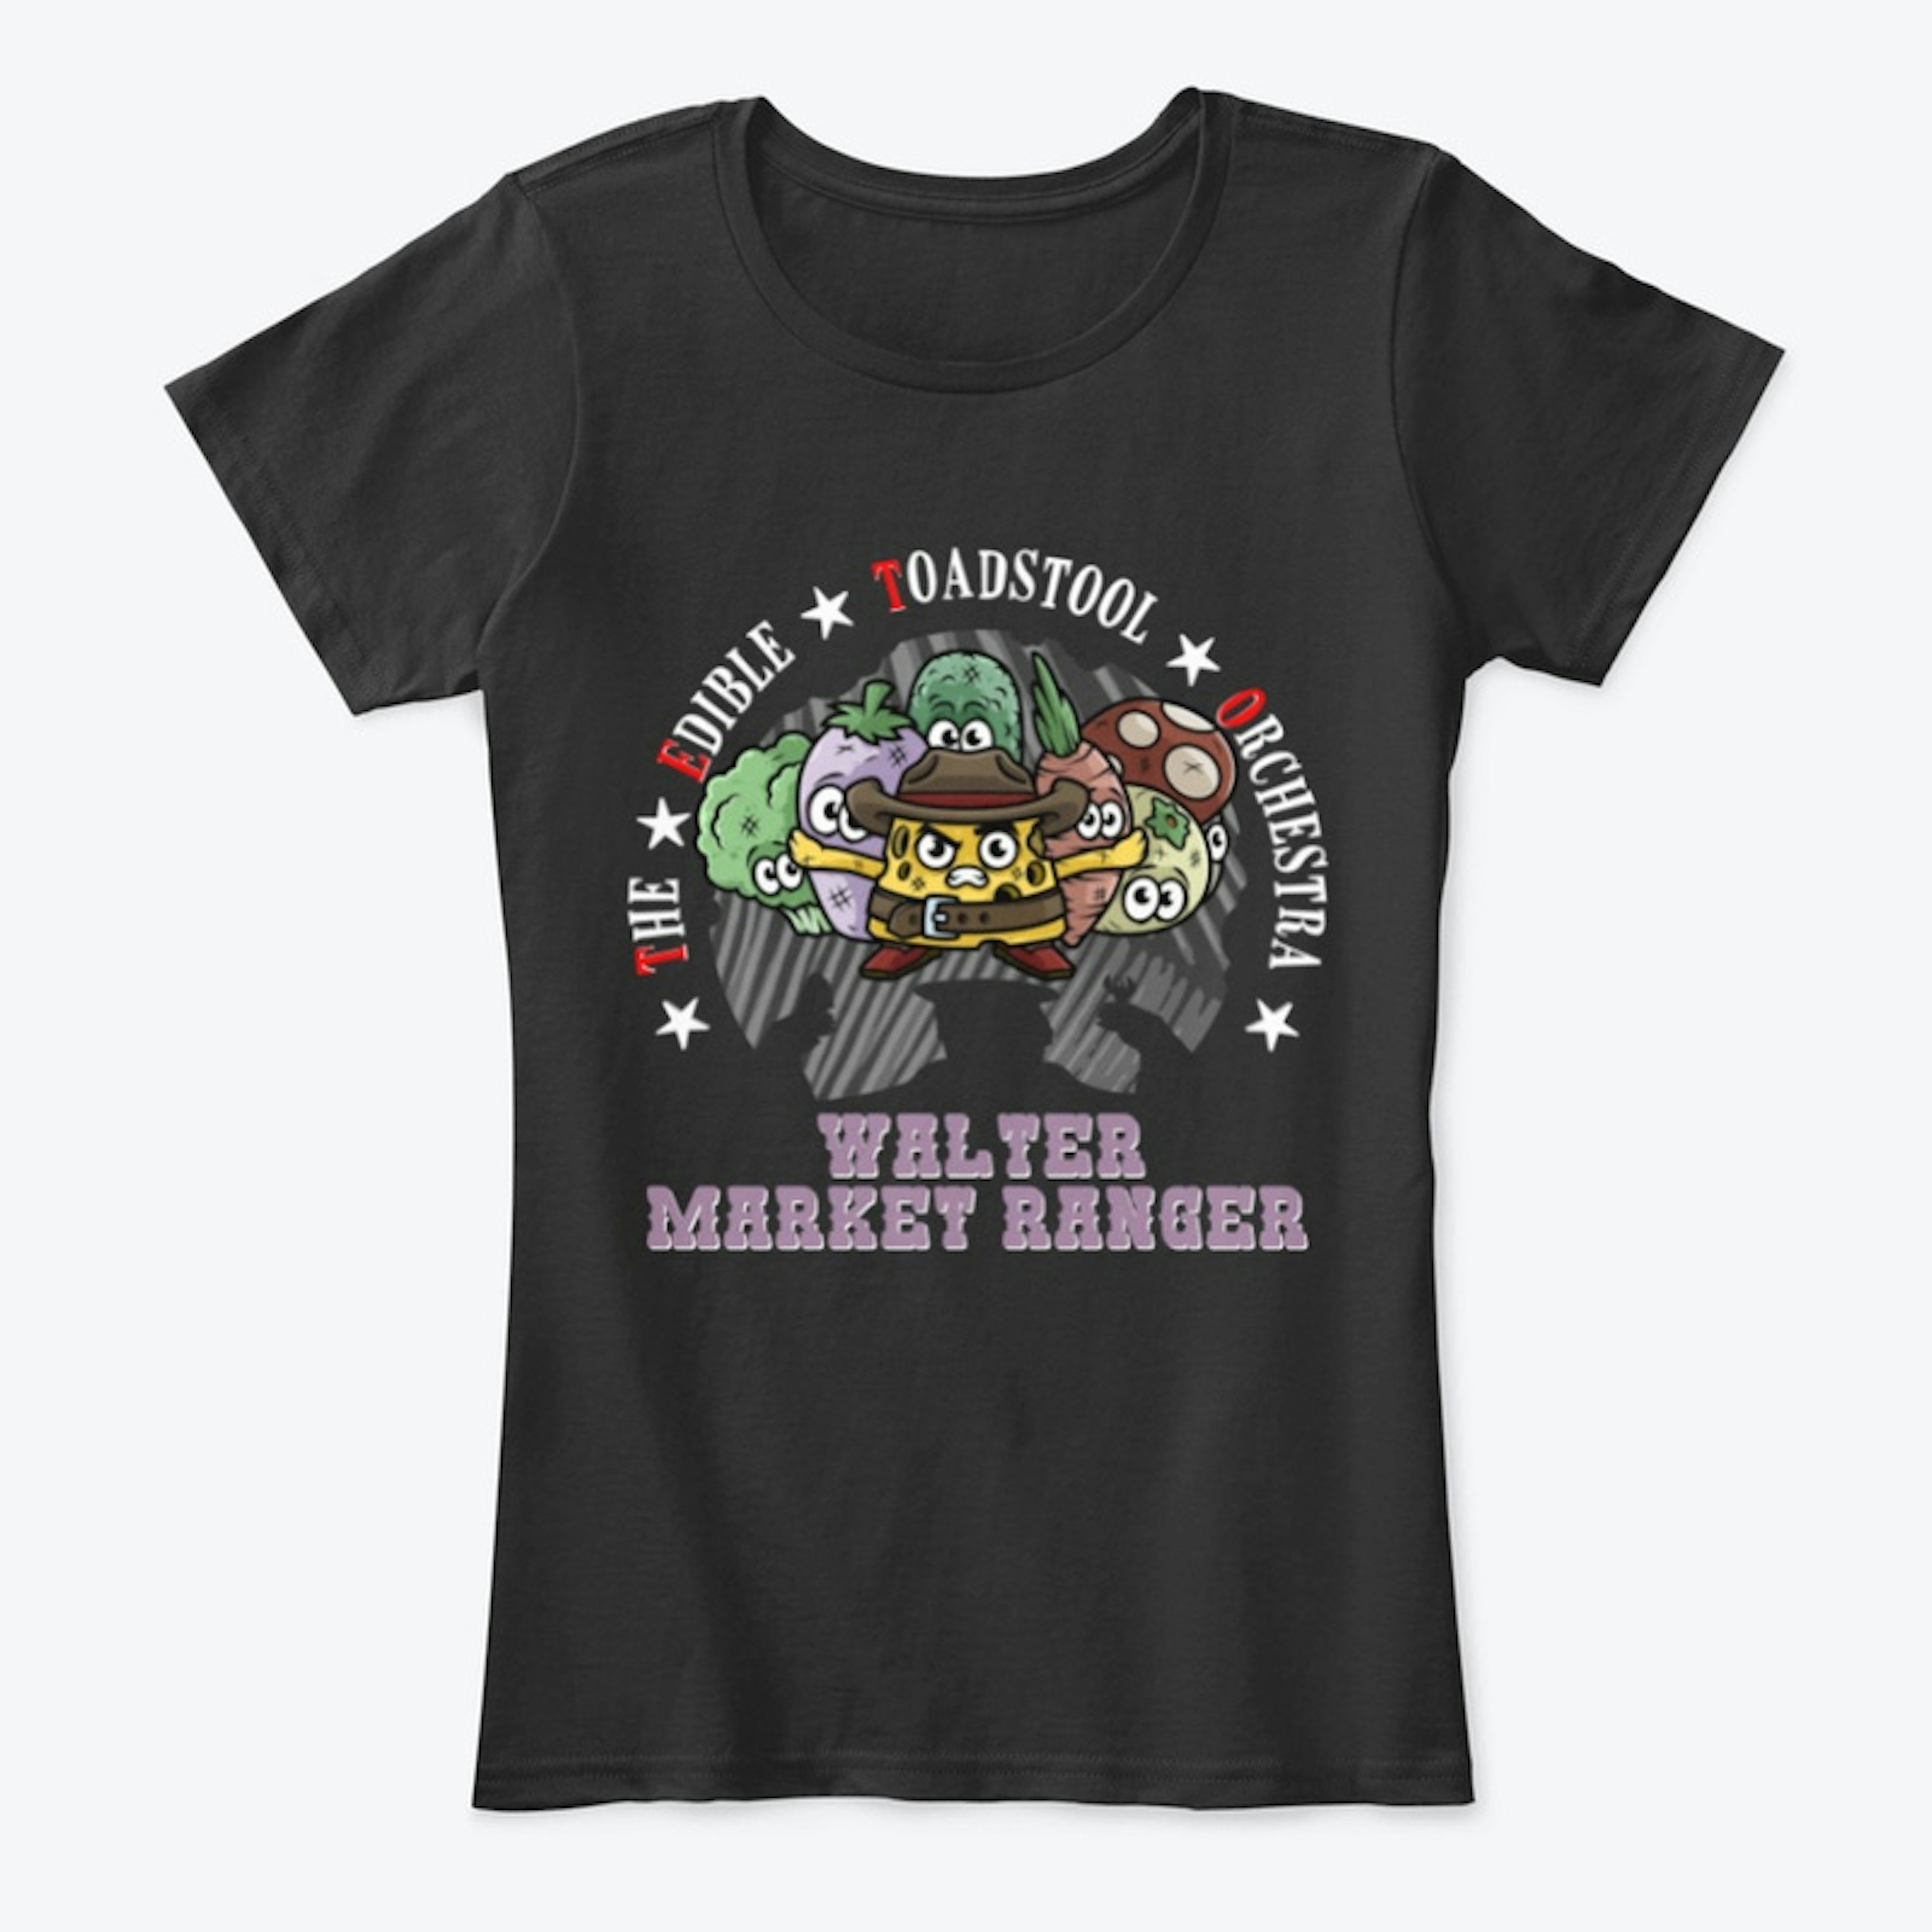 WALTER MARKET RANGER - Woman Shirt